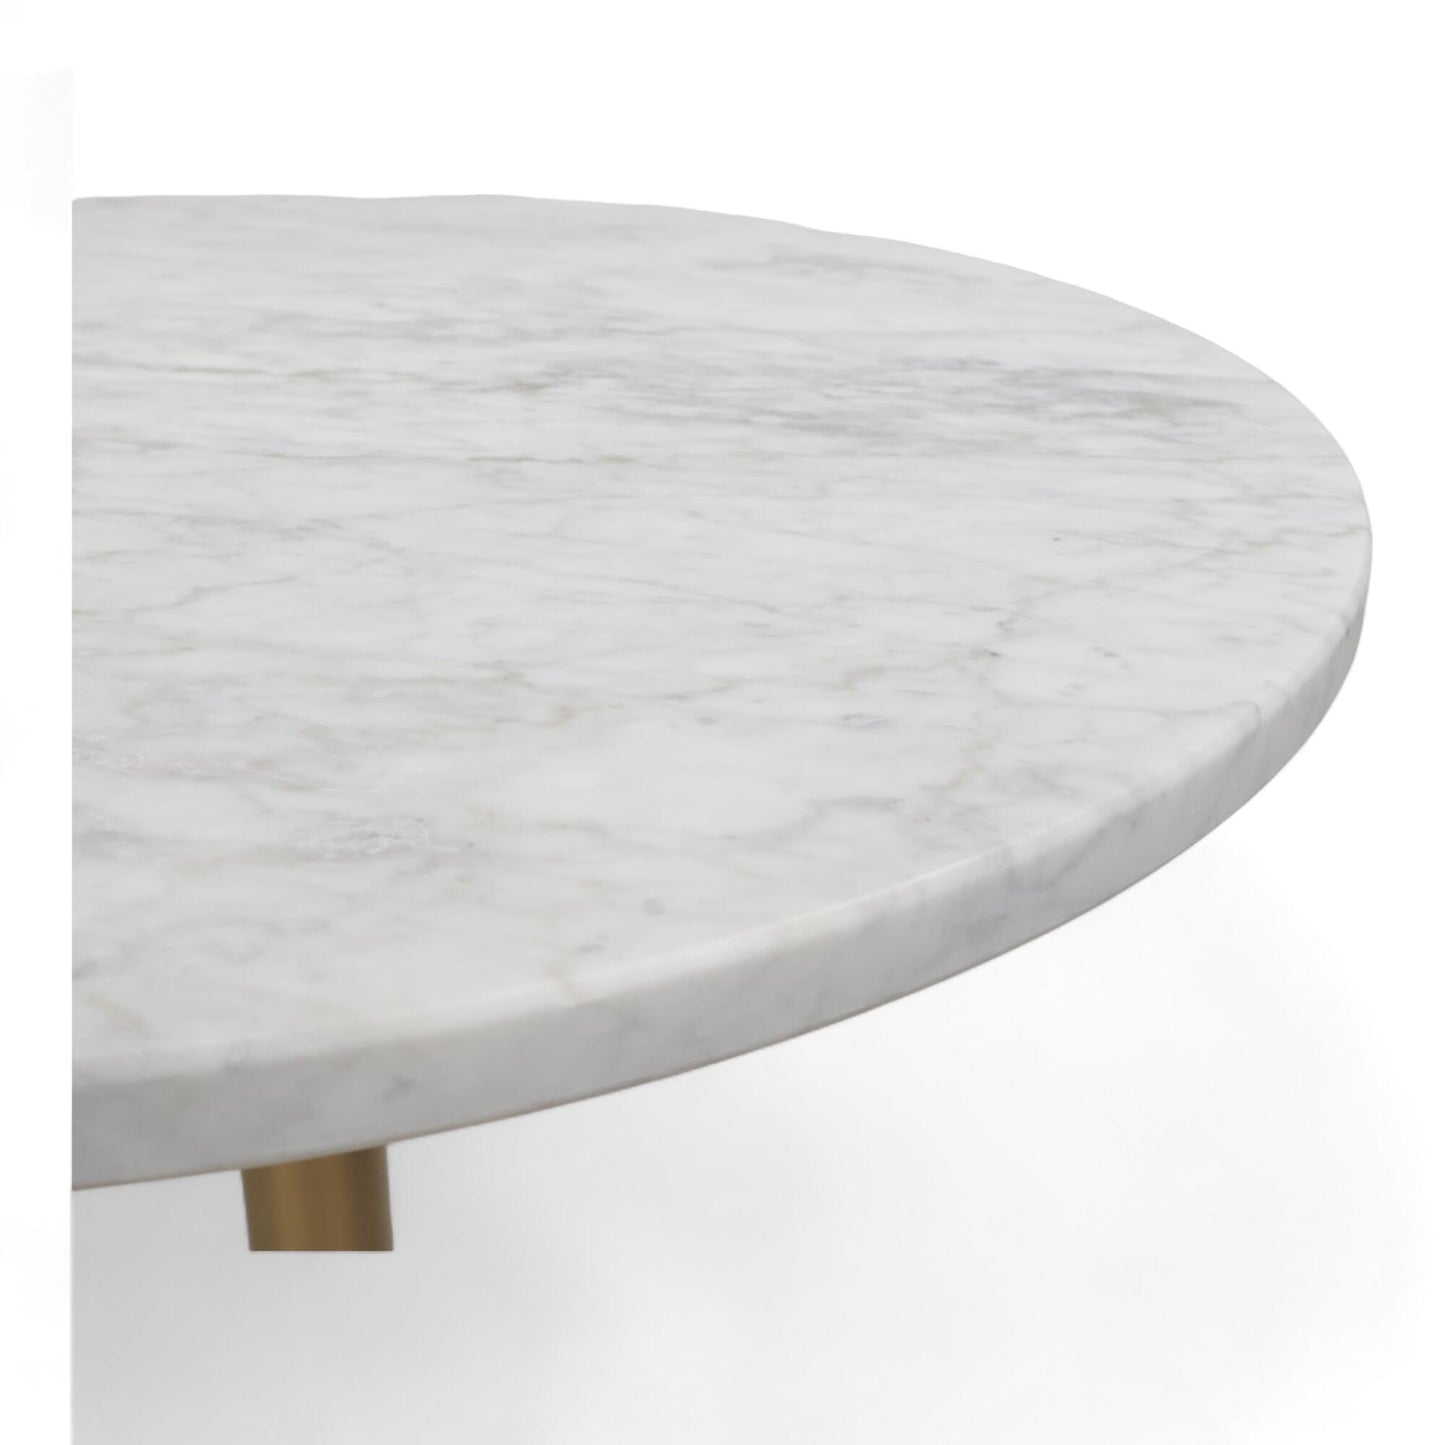 Nyrenset | Pedrali høyt bord med marmorplate og gullfot